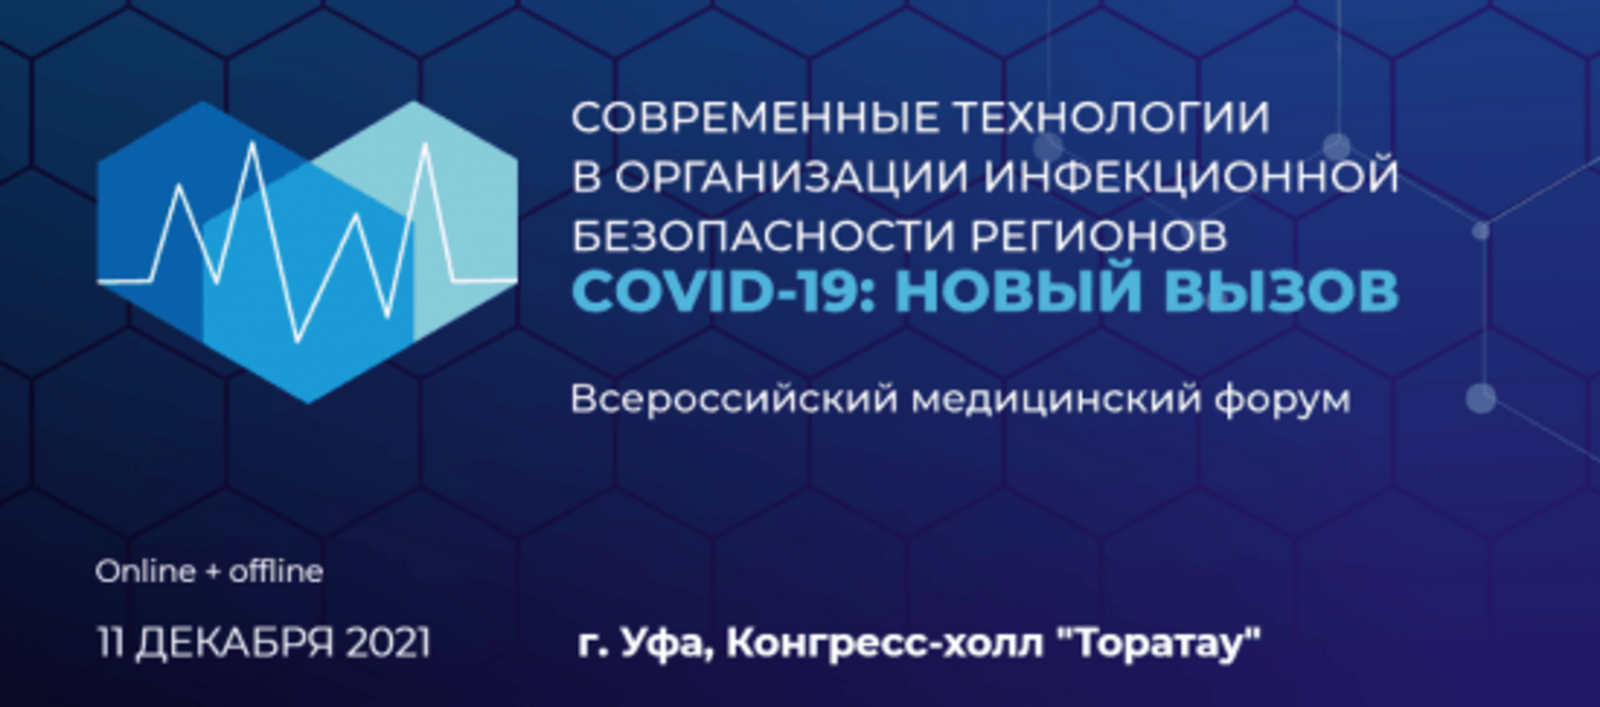 В Уфе 11 декабря состоится Всероссийский медицинский форум «COVID-19: новый вызов»